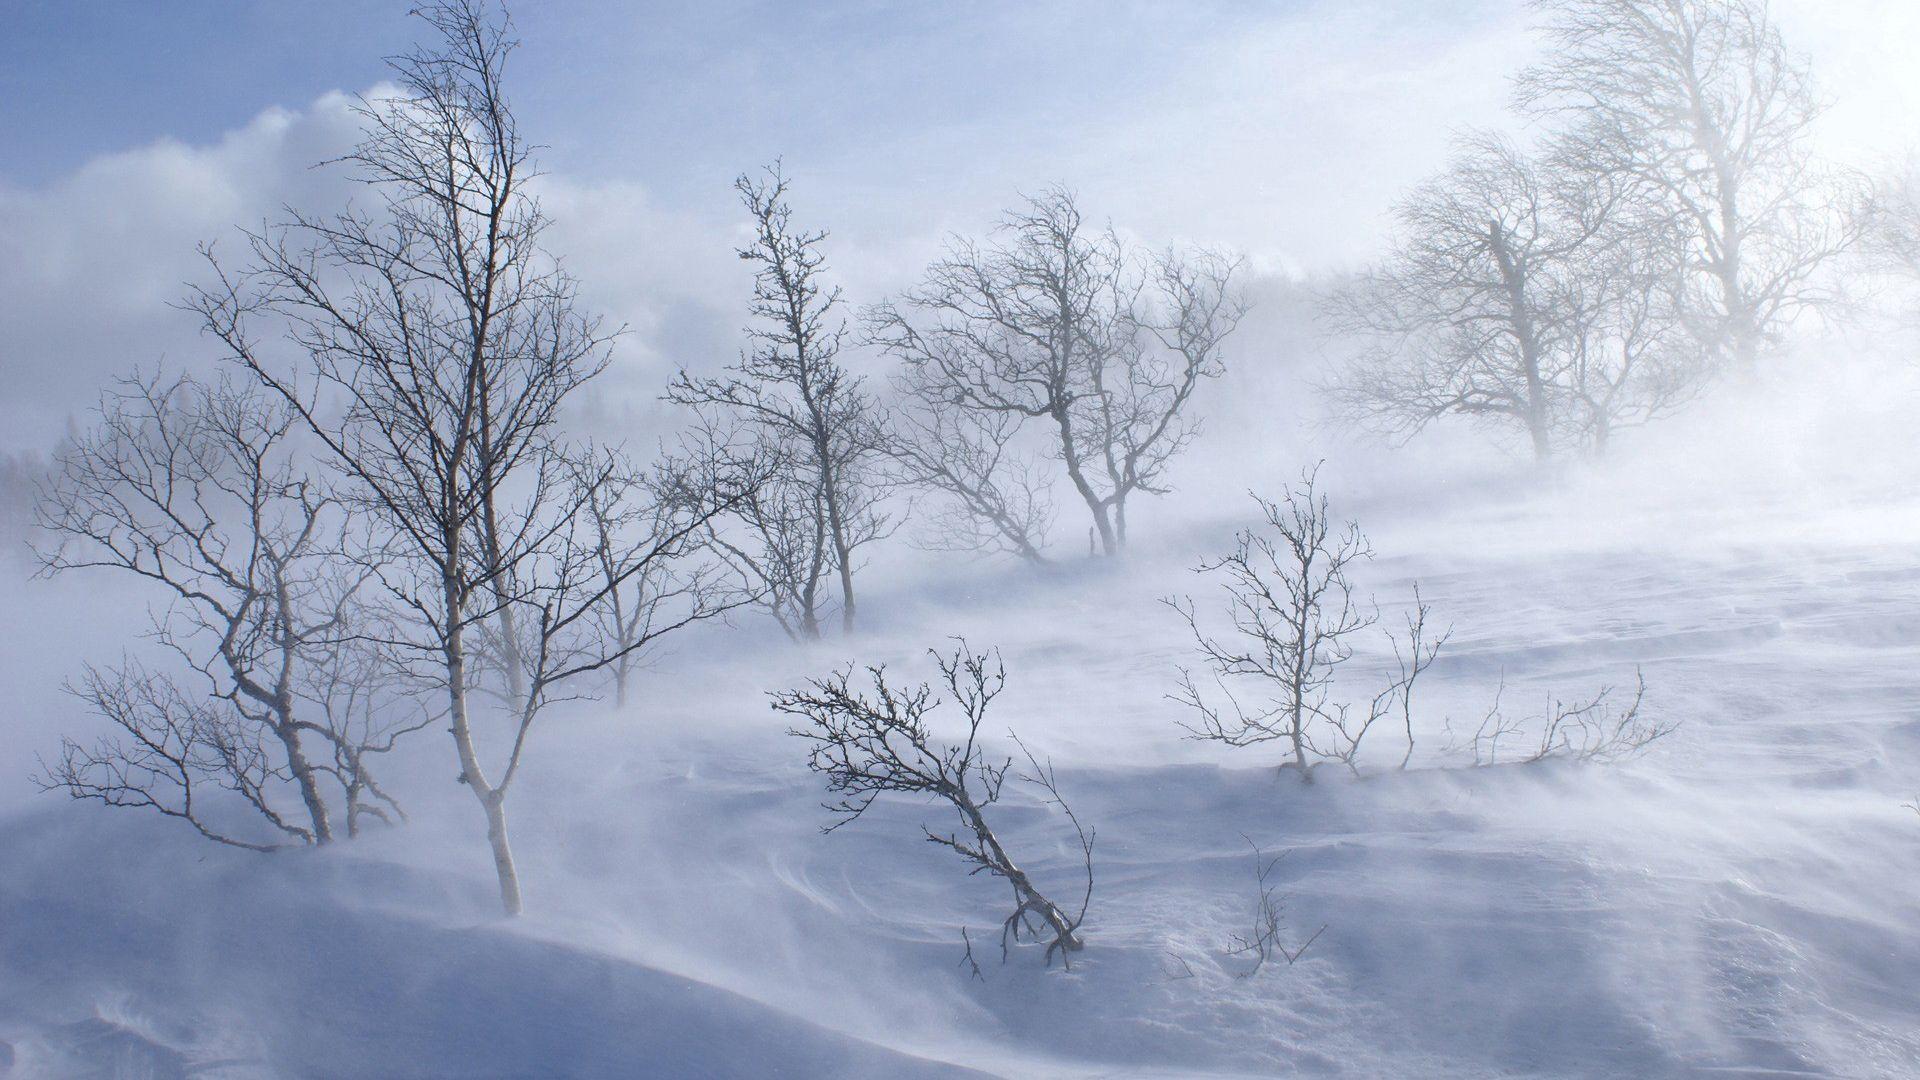 Скачать 1920x1080 деревья, зима, вьюга, ветер, снег обои, картинки full hd,  hdtv, fhd, 1080p